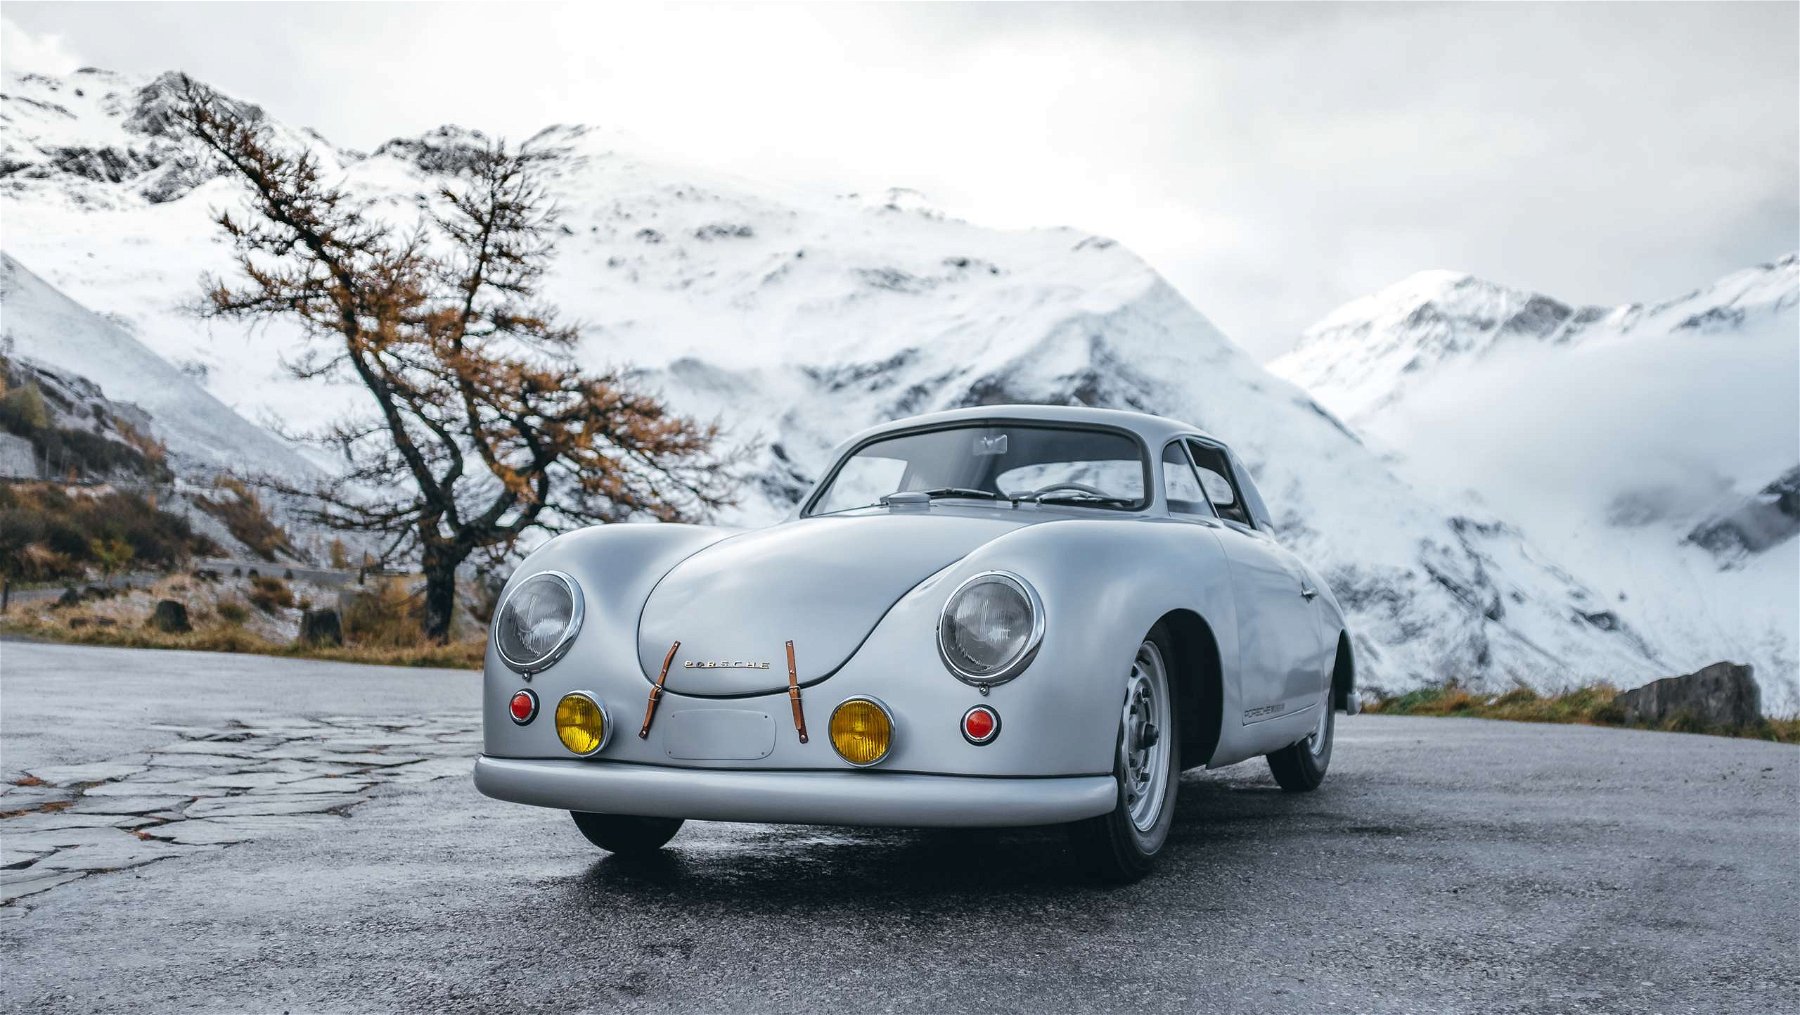 The 5 lightest Porsche models